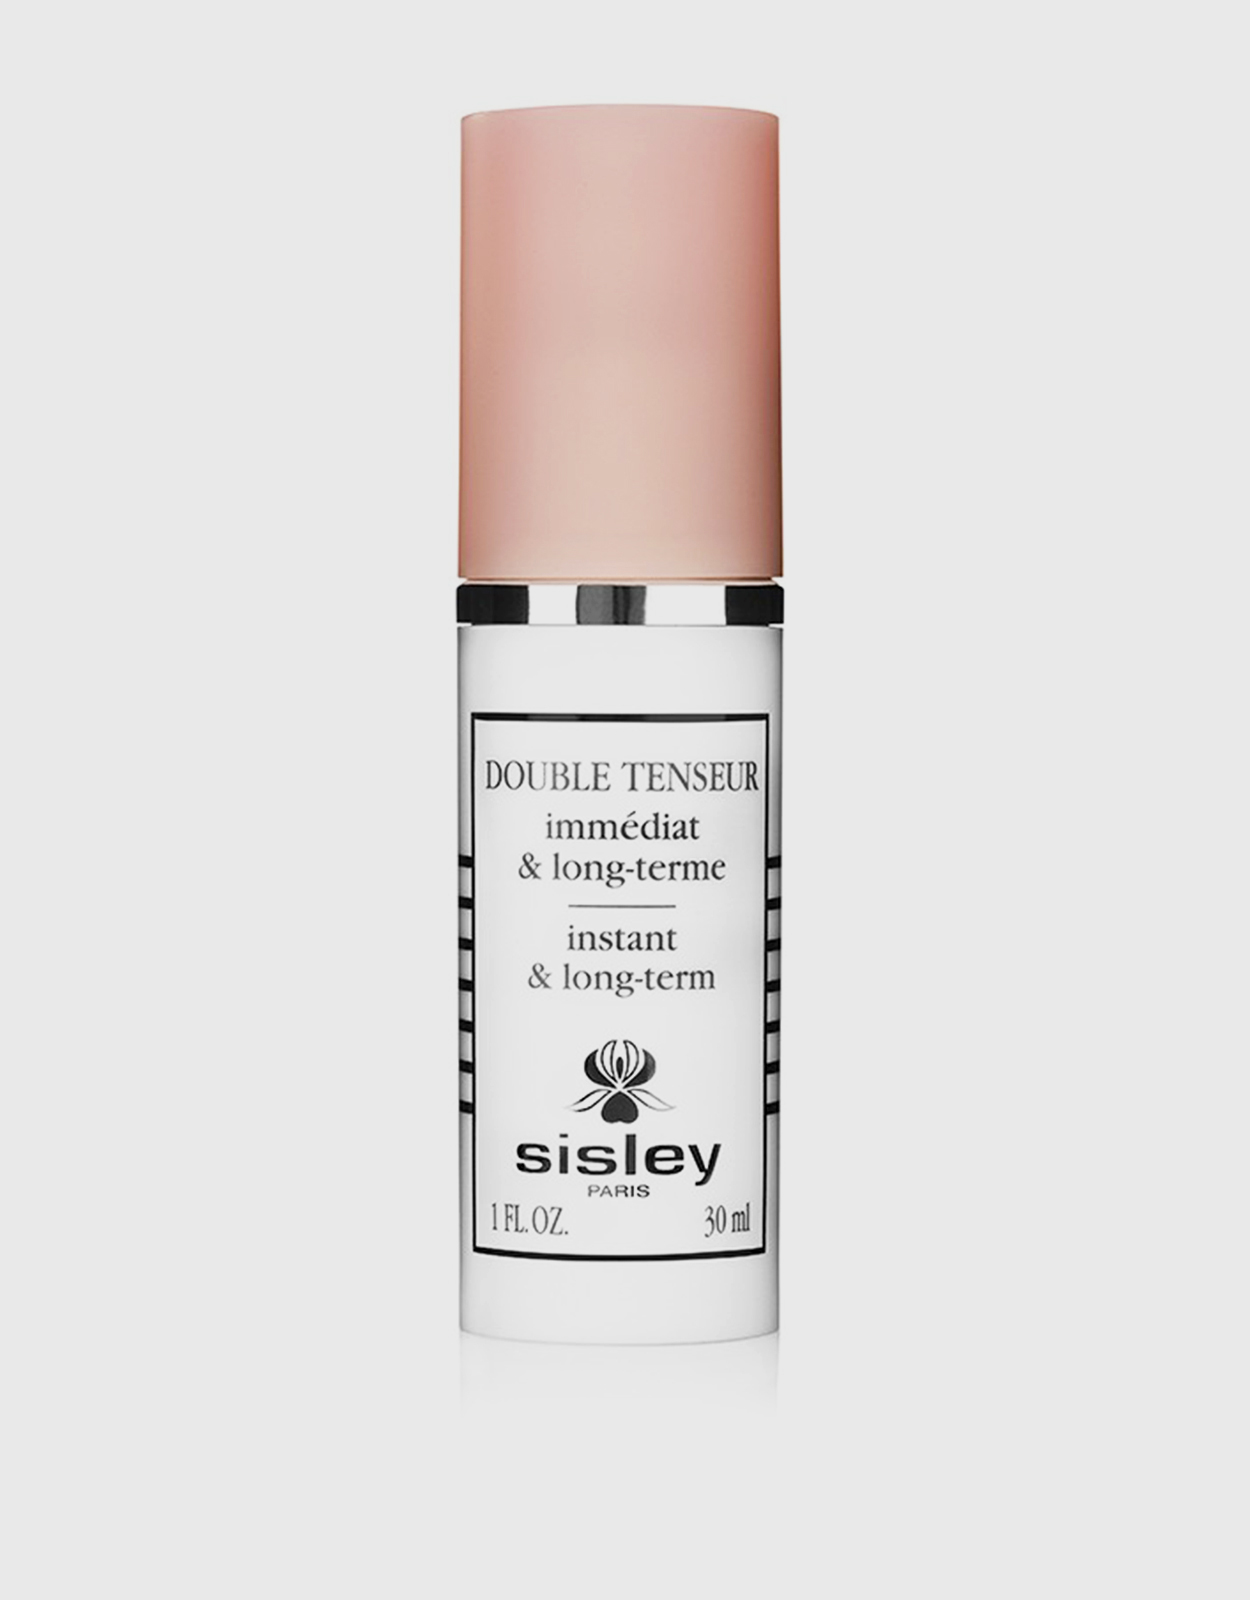 Sisley-Paris Double Tenseur Instant & Long-Term Gel - 1.0 oz bottle